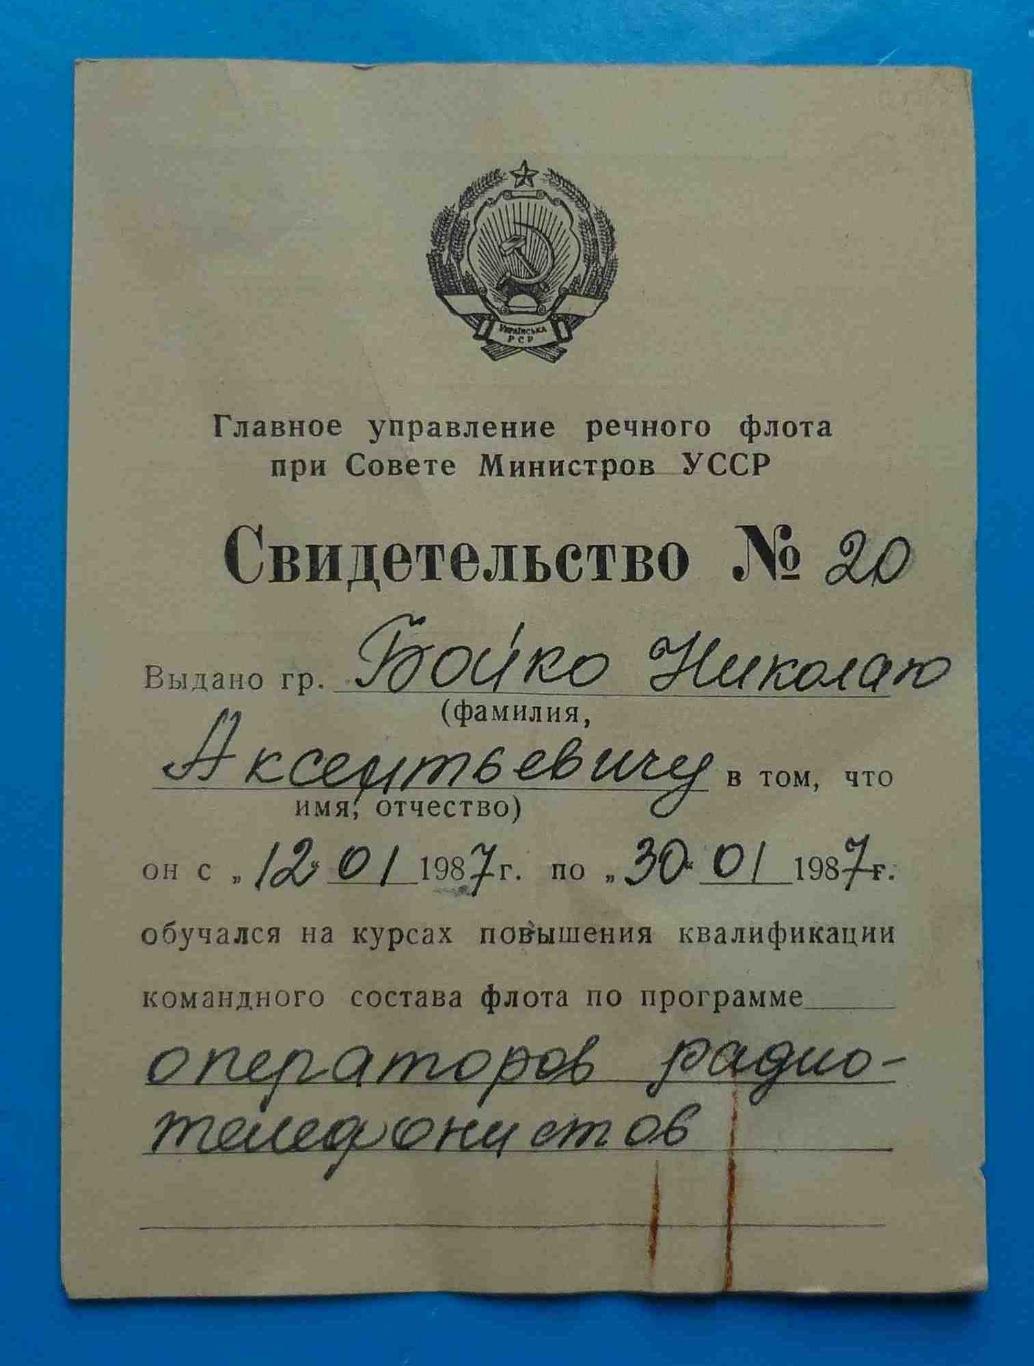 Дипломы судомеханика и судоводителя с талонами Речной флот УССР 1973 7